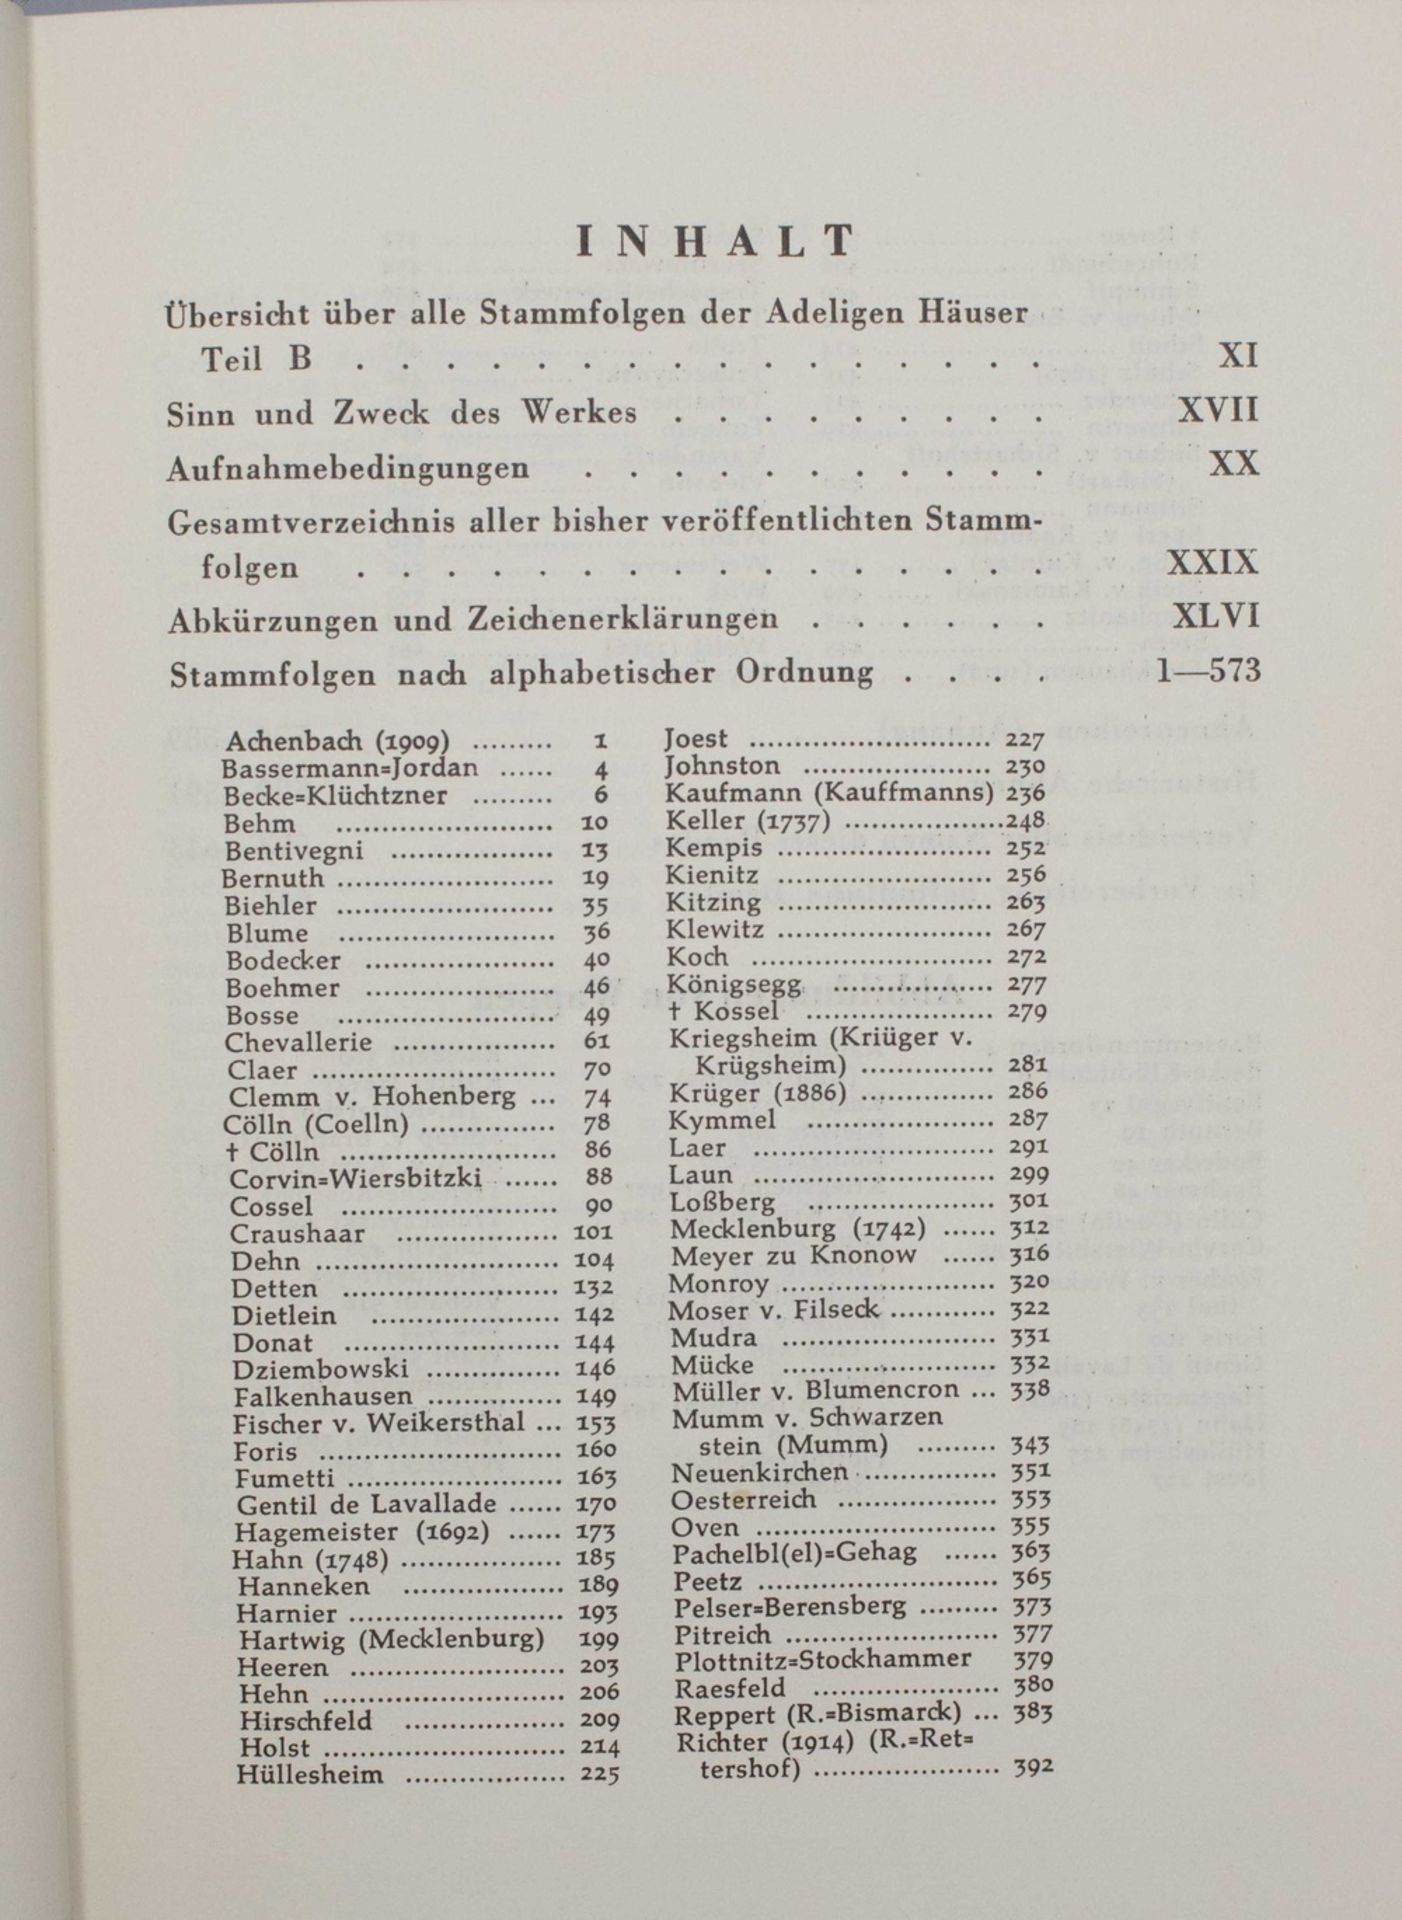 Genealogisches Handbuch des Adels Band III, Glücksburg, 1958 - Bild 3 aus 6